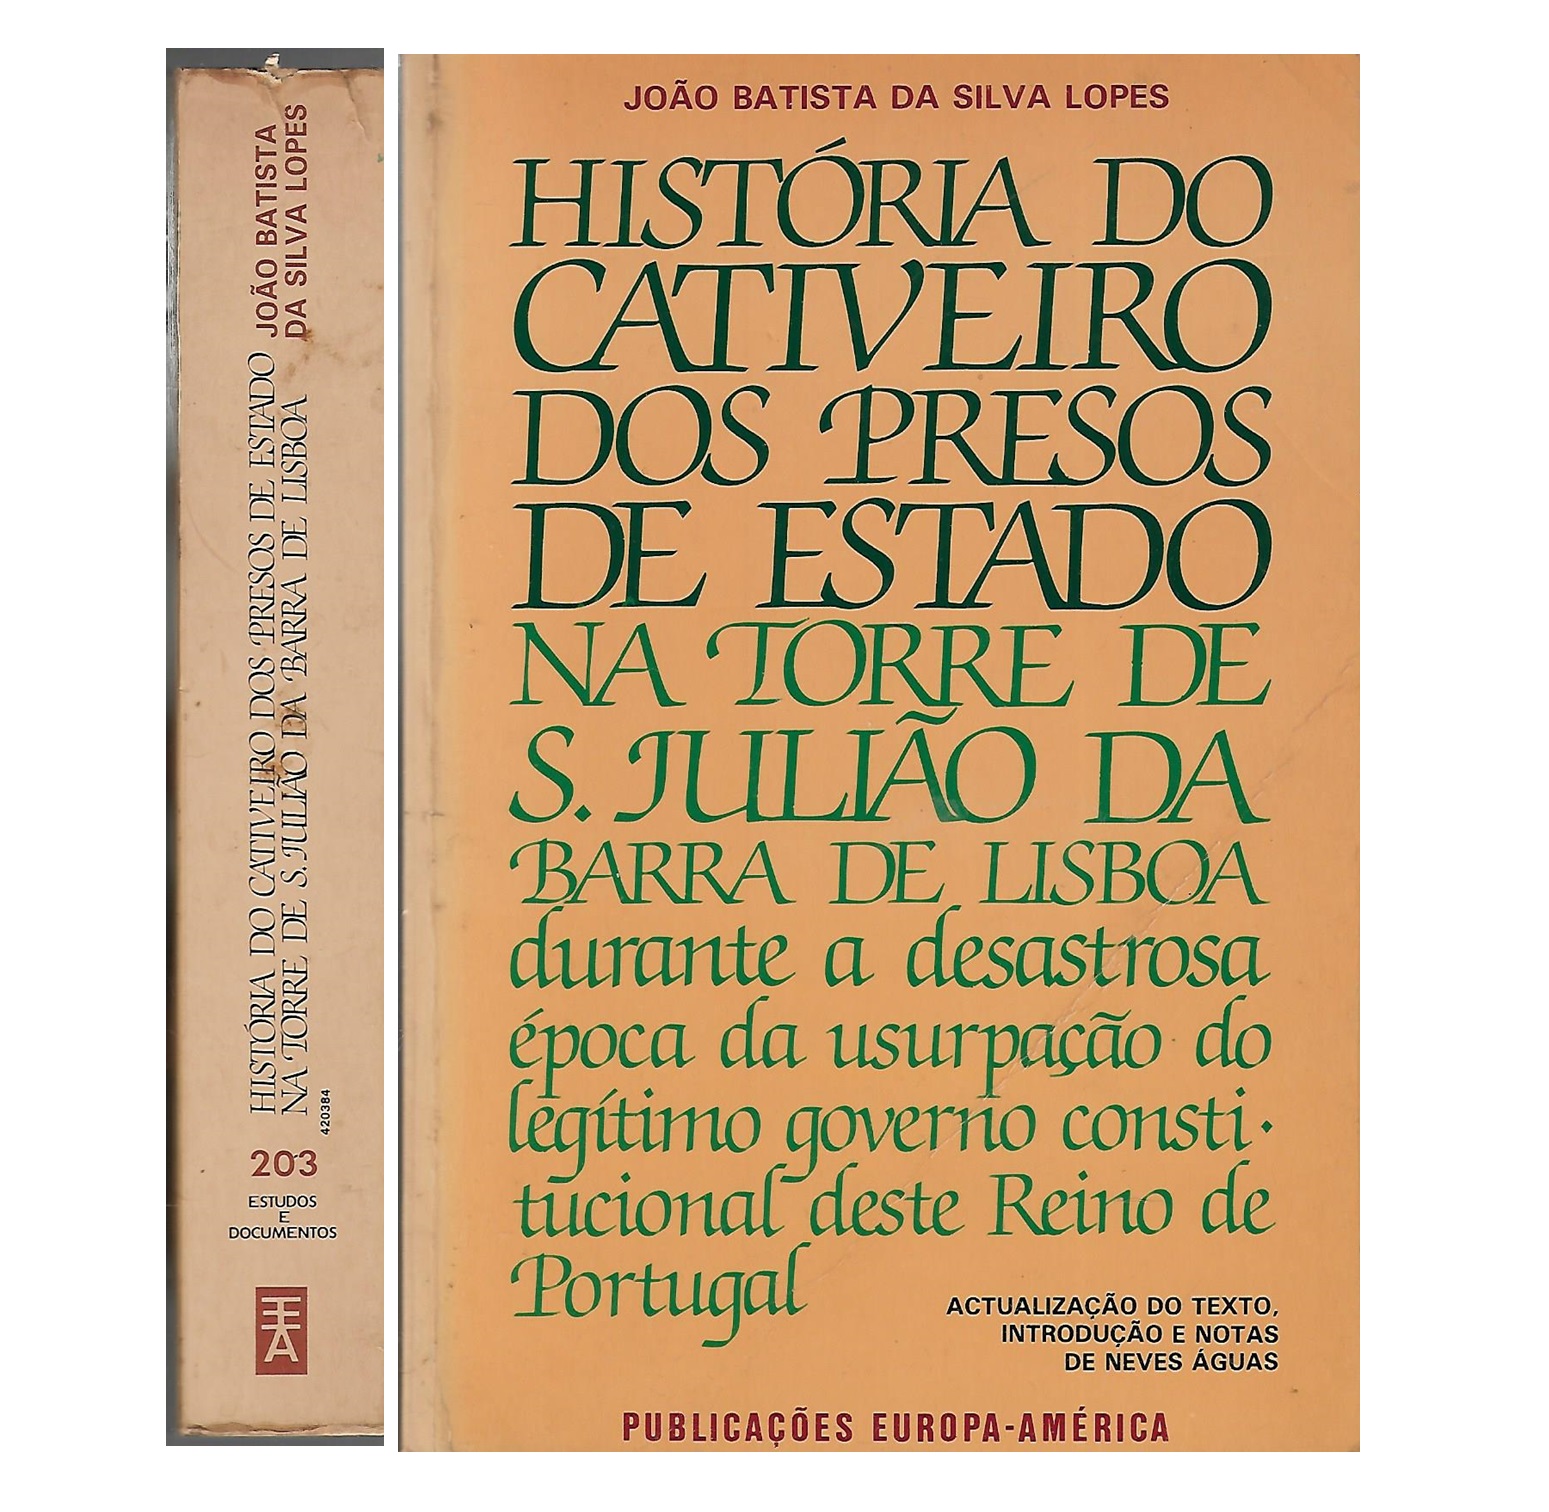 HISTÓRIA DO CATIVEIRO DOS PRESOS DE ESTADO NA TORRE DE S. JULIÃO DA BARRA DE LISBOA